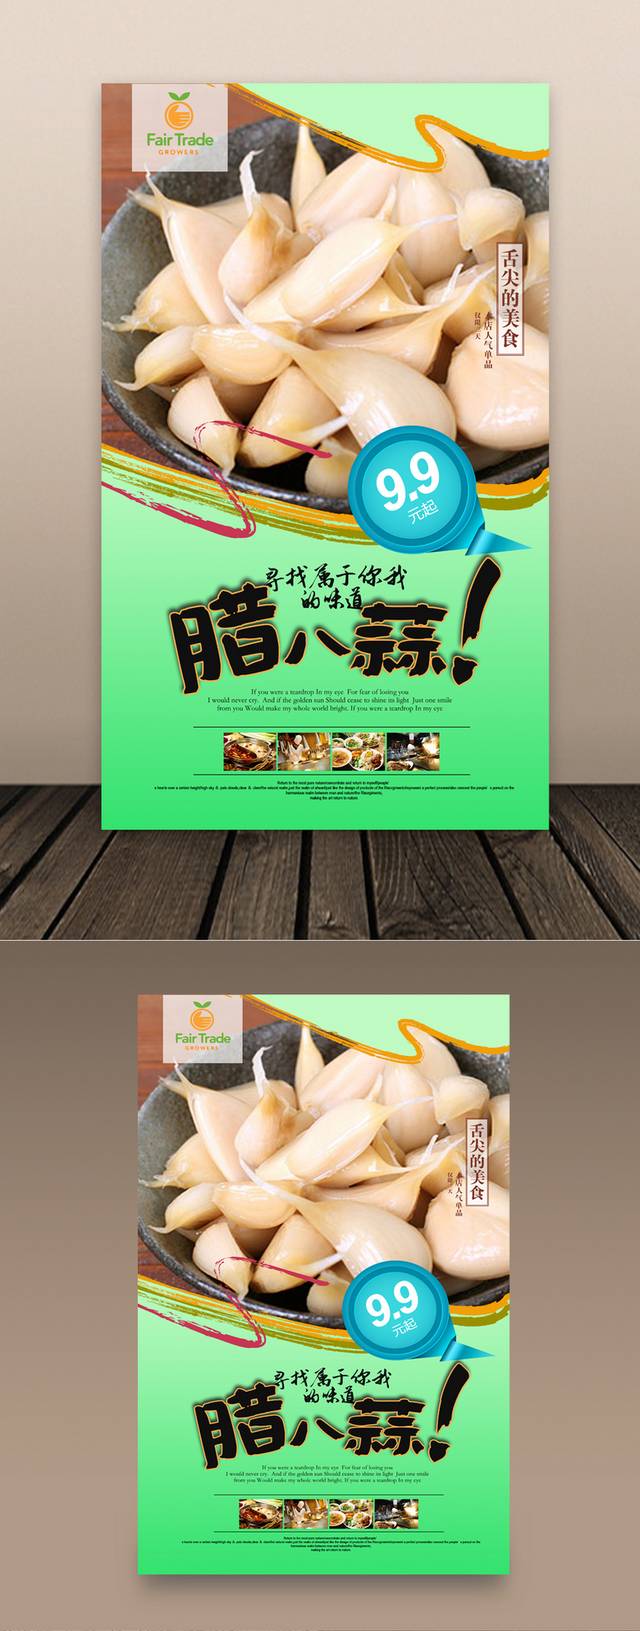 咸菜店宣传海报设计